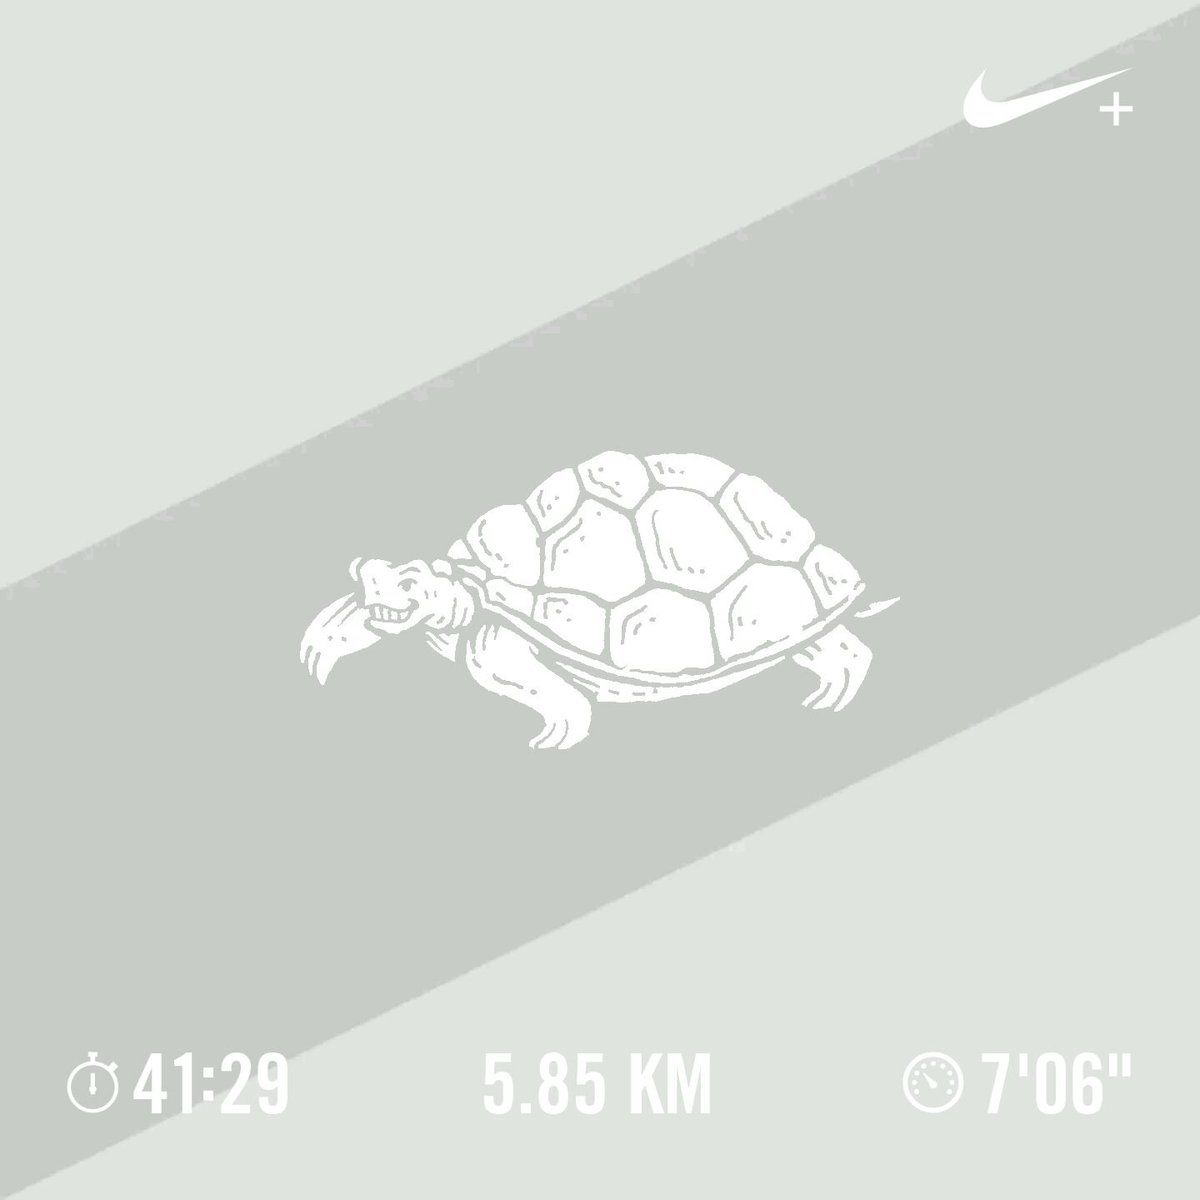 Im a slow #runner for now... #teamfitness #teamrun #seemerun 😥😰